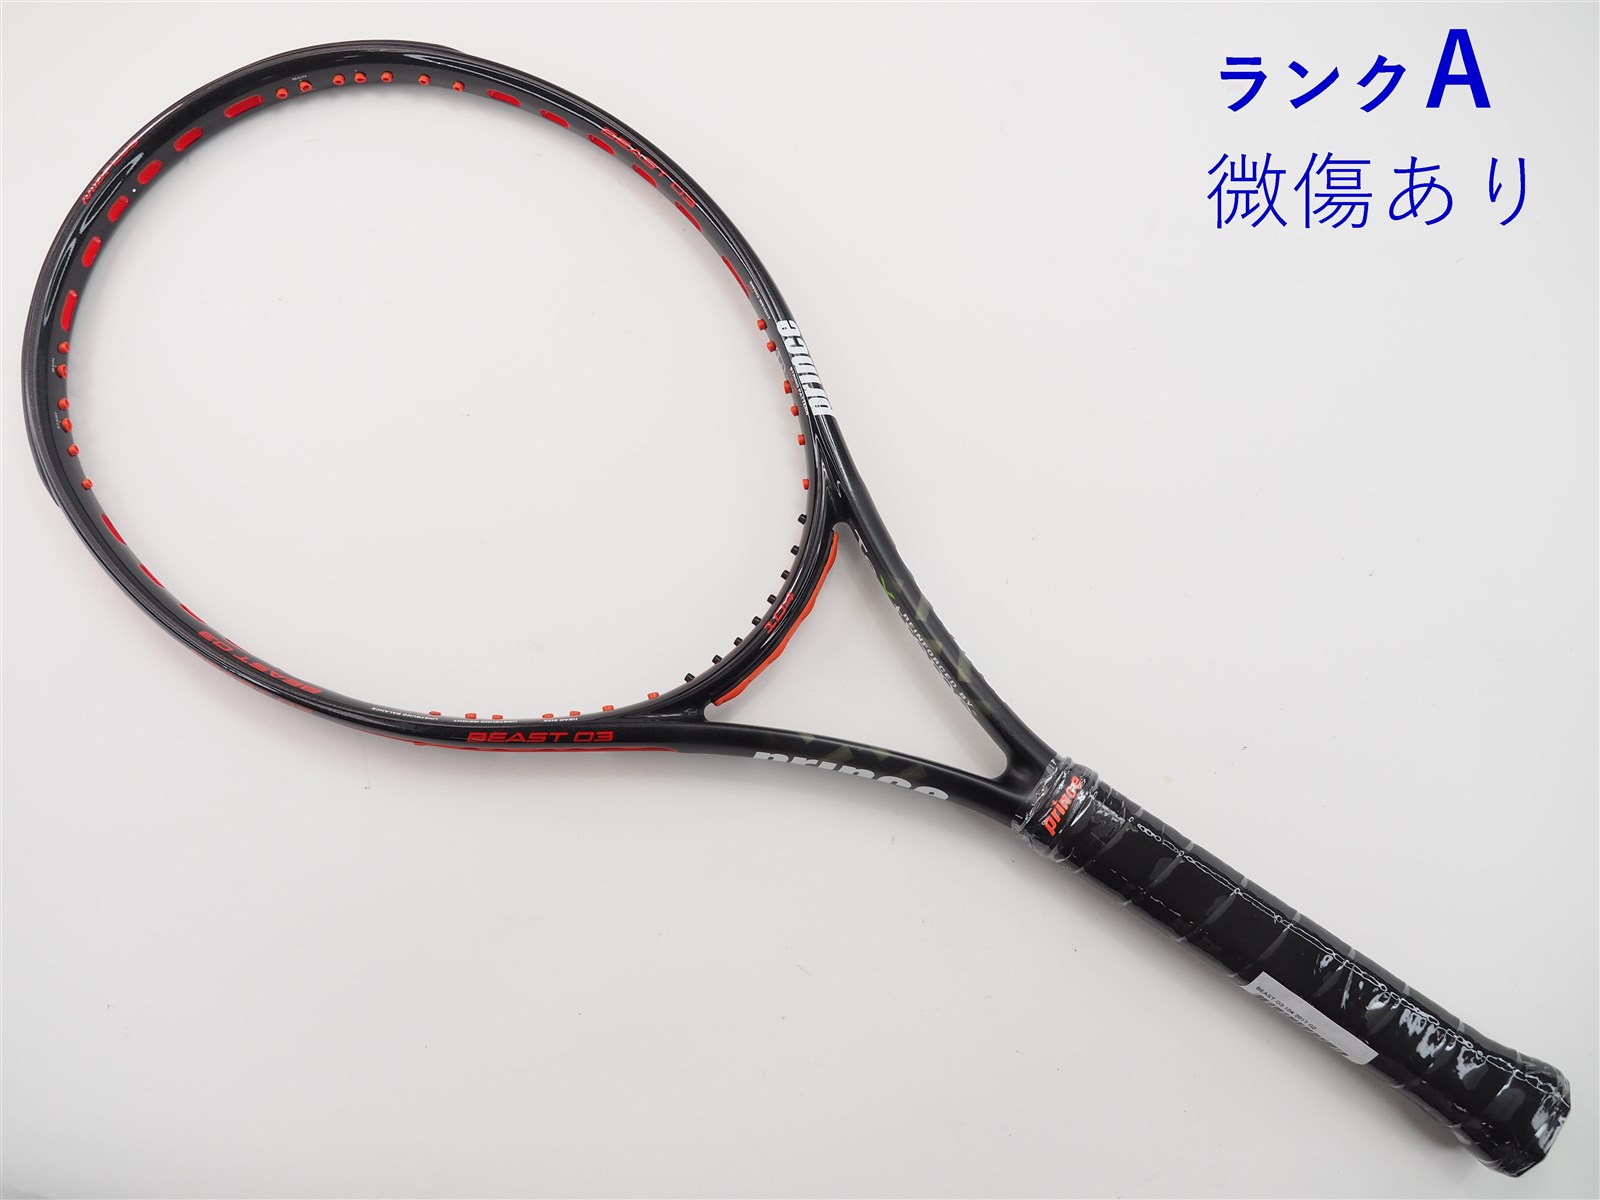 テニスラケット プリンス ビースト オースリー 104 2017年モデル (G2